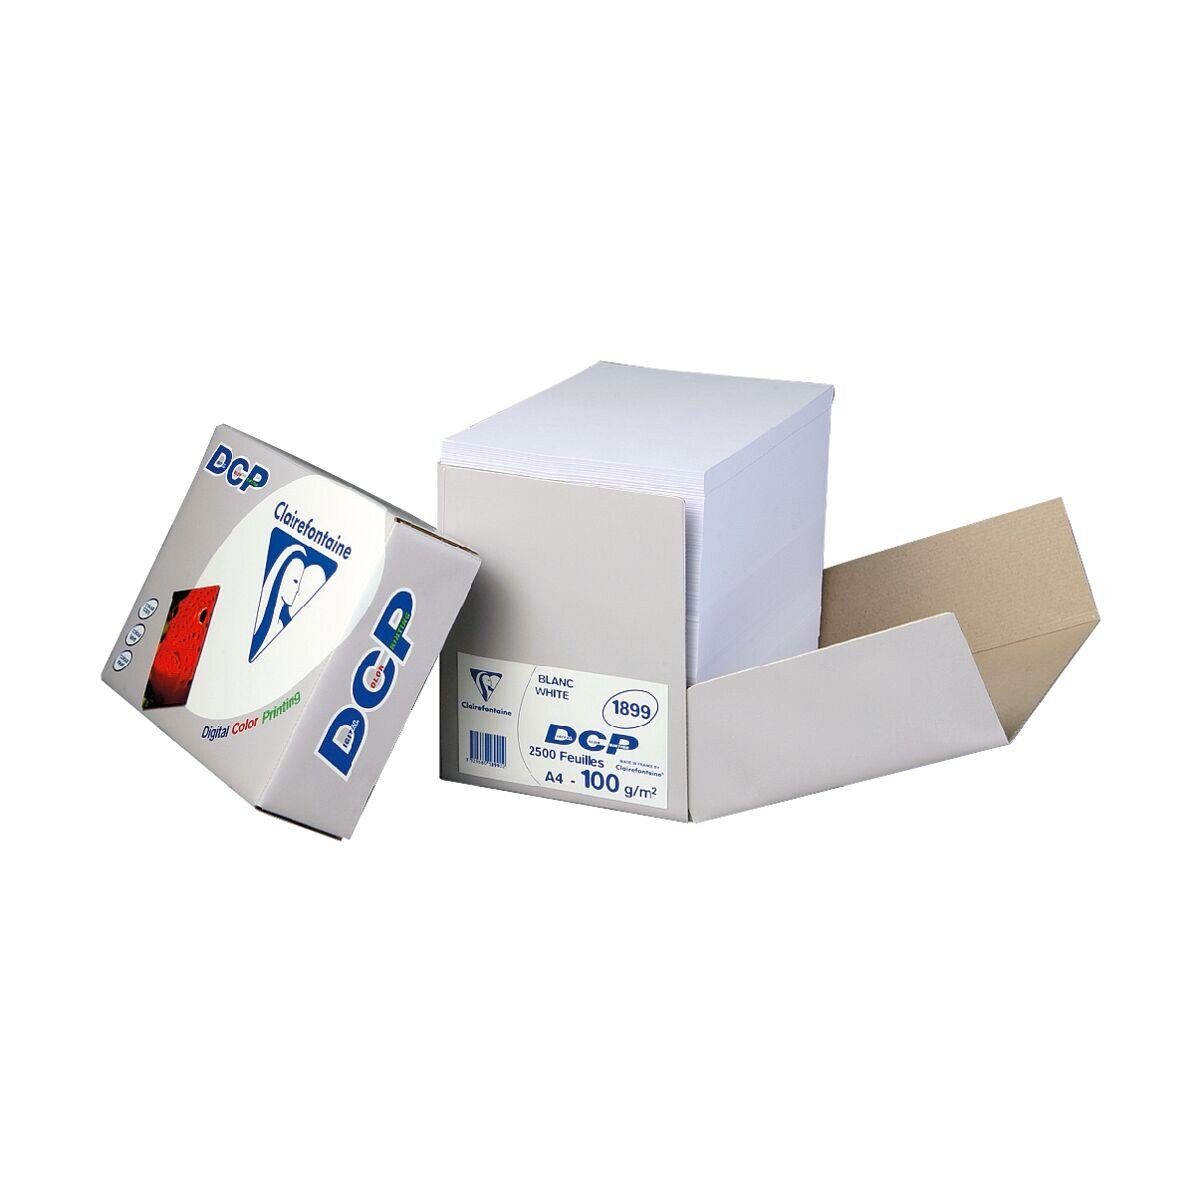 CLAIREFONTAINE Farblaser-Druckerpapier DCP, Format g/m², Blatt DIN 100 CIE, 172 2.500 A4